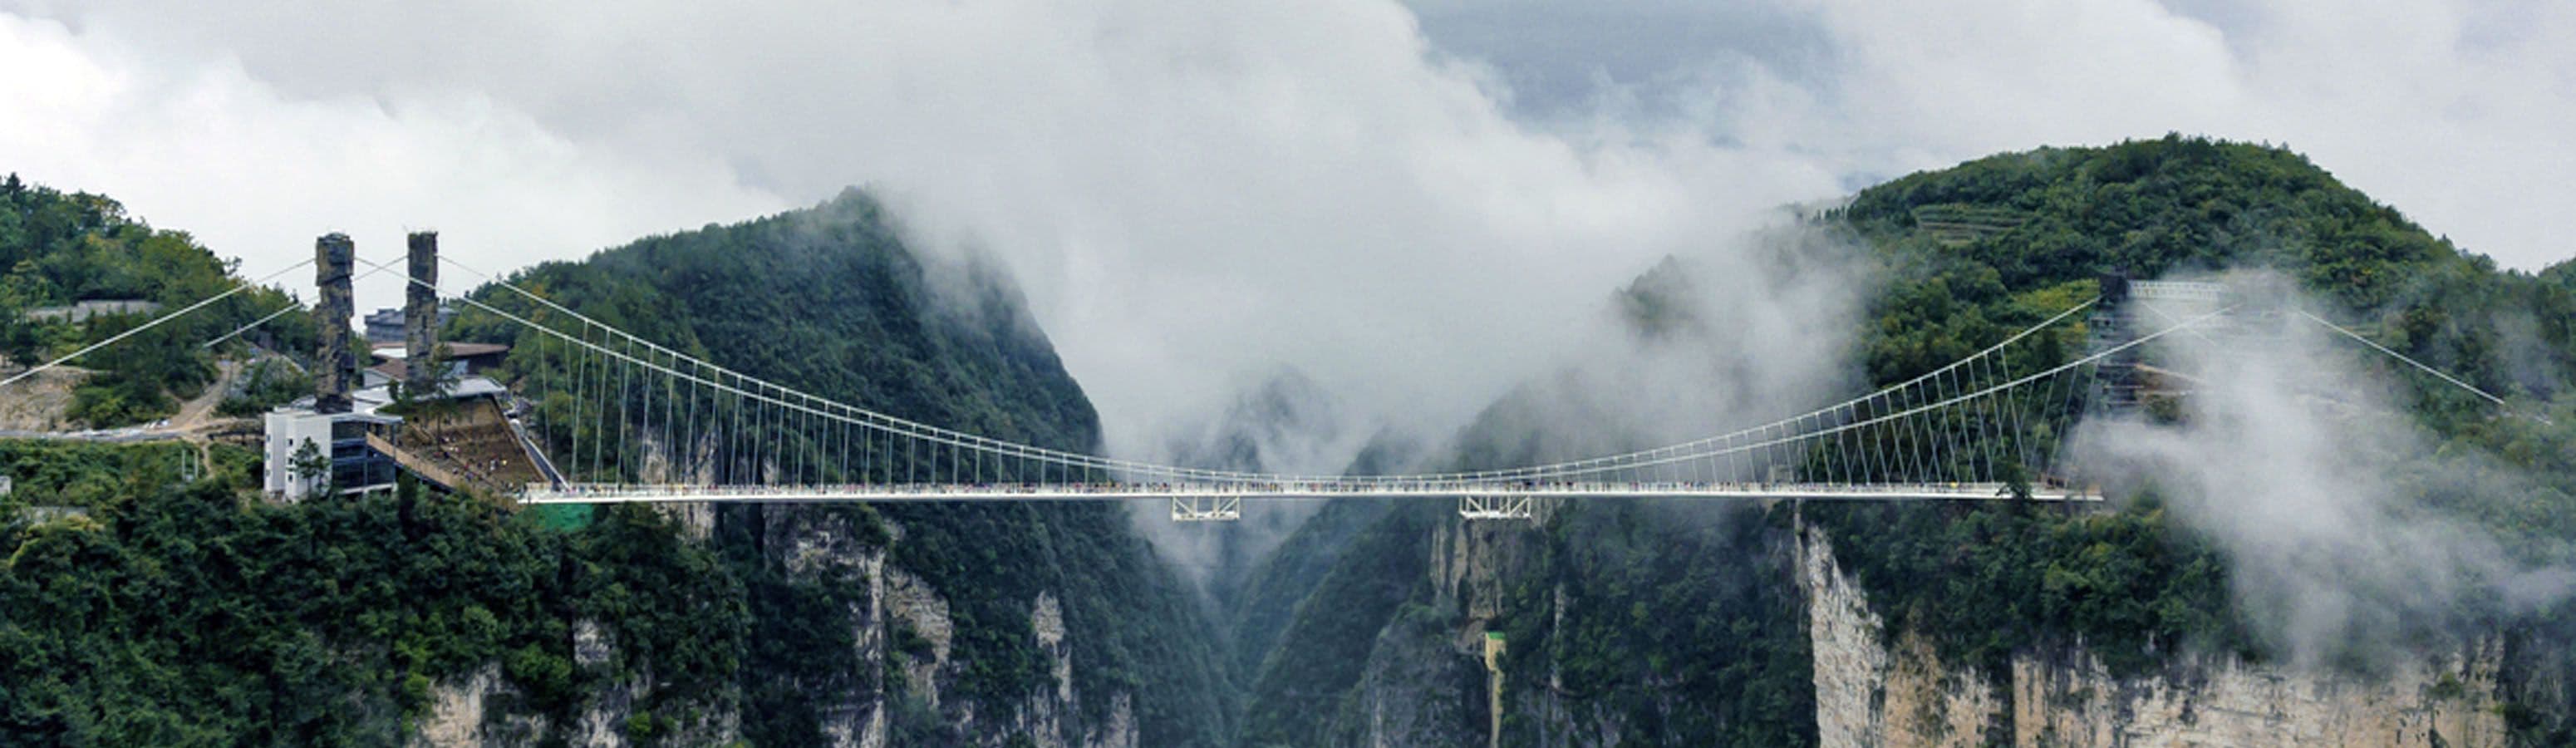 Skleněný most nad snovou krajinou z Avatara